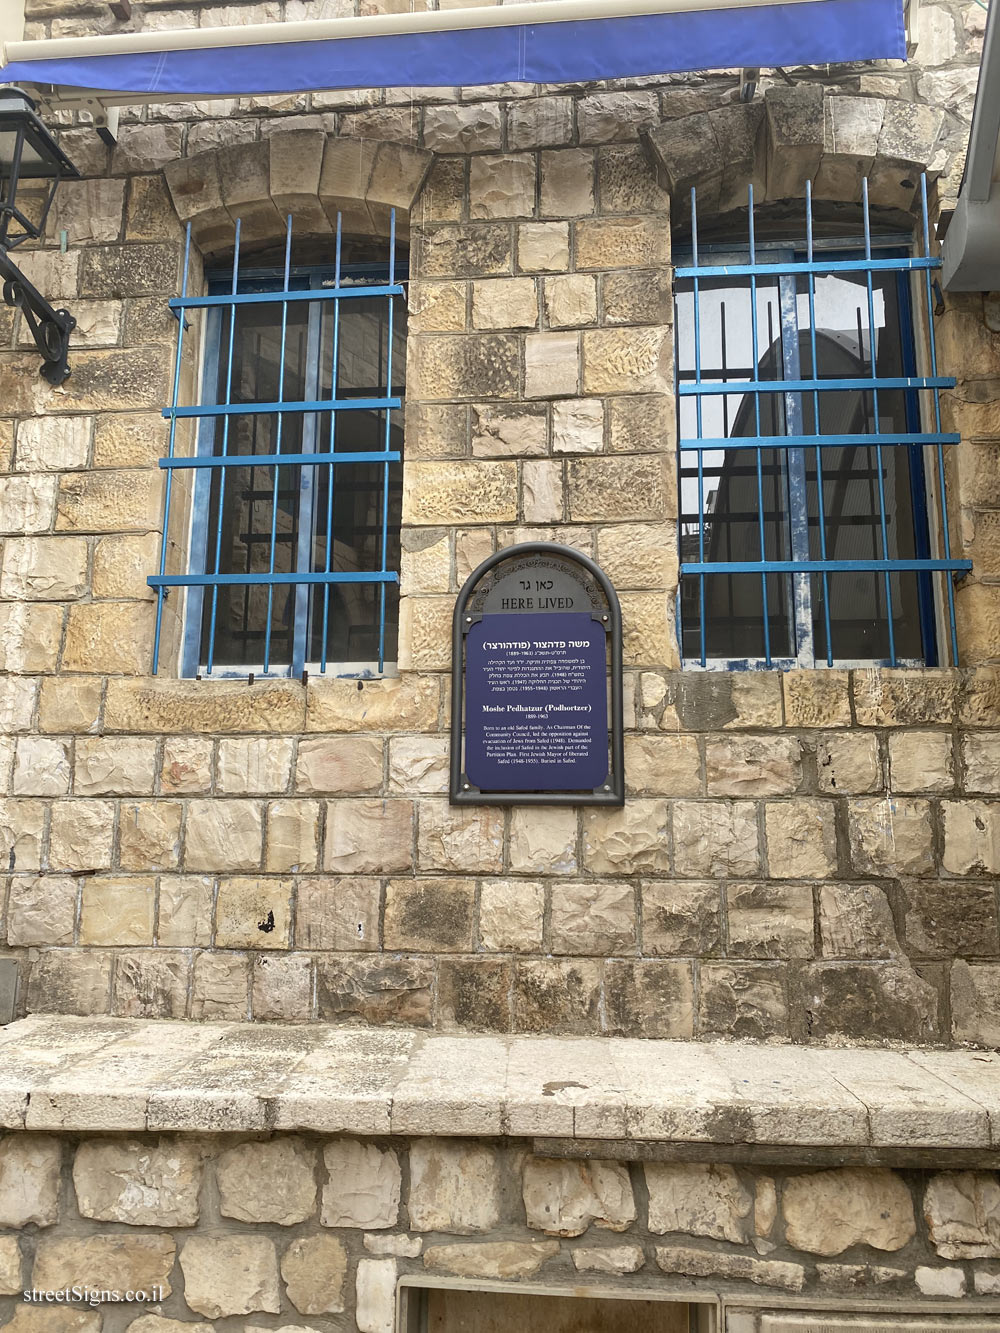 Safed - the house where Moshe Pedhatzur lived - Beit Yosef St 10-6, Safed, Israel